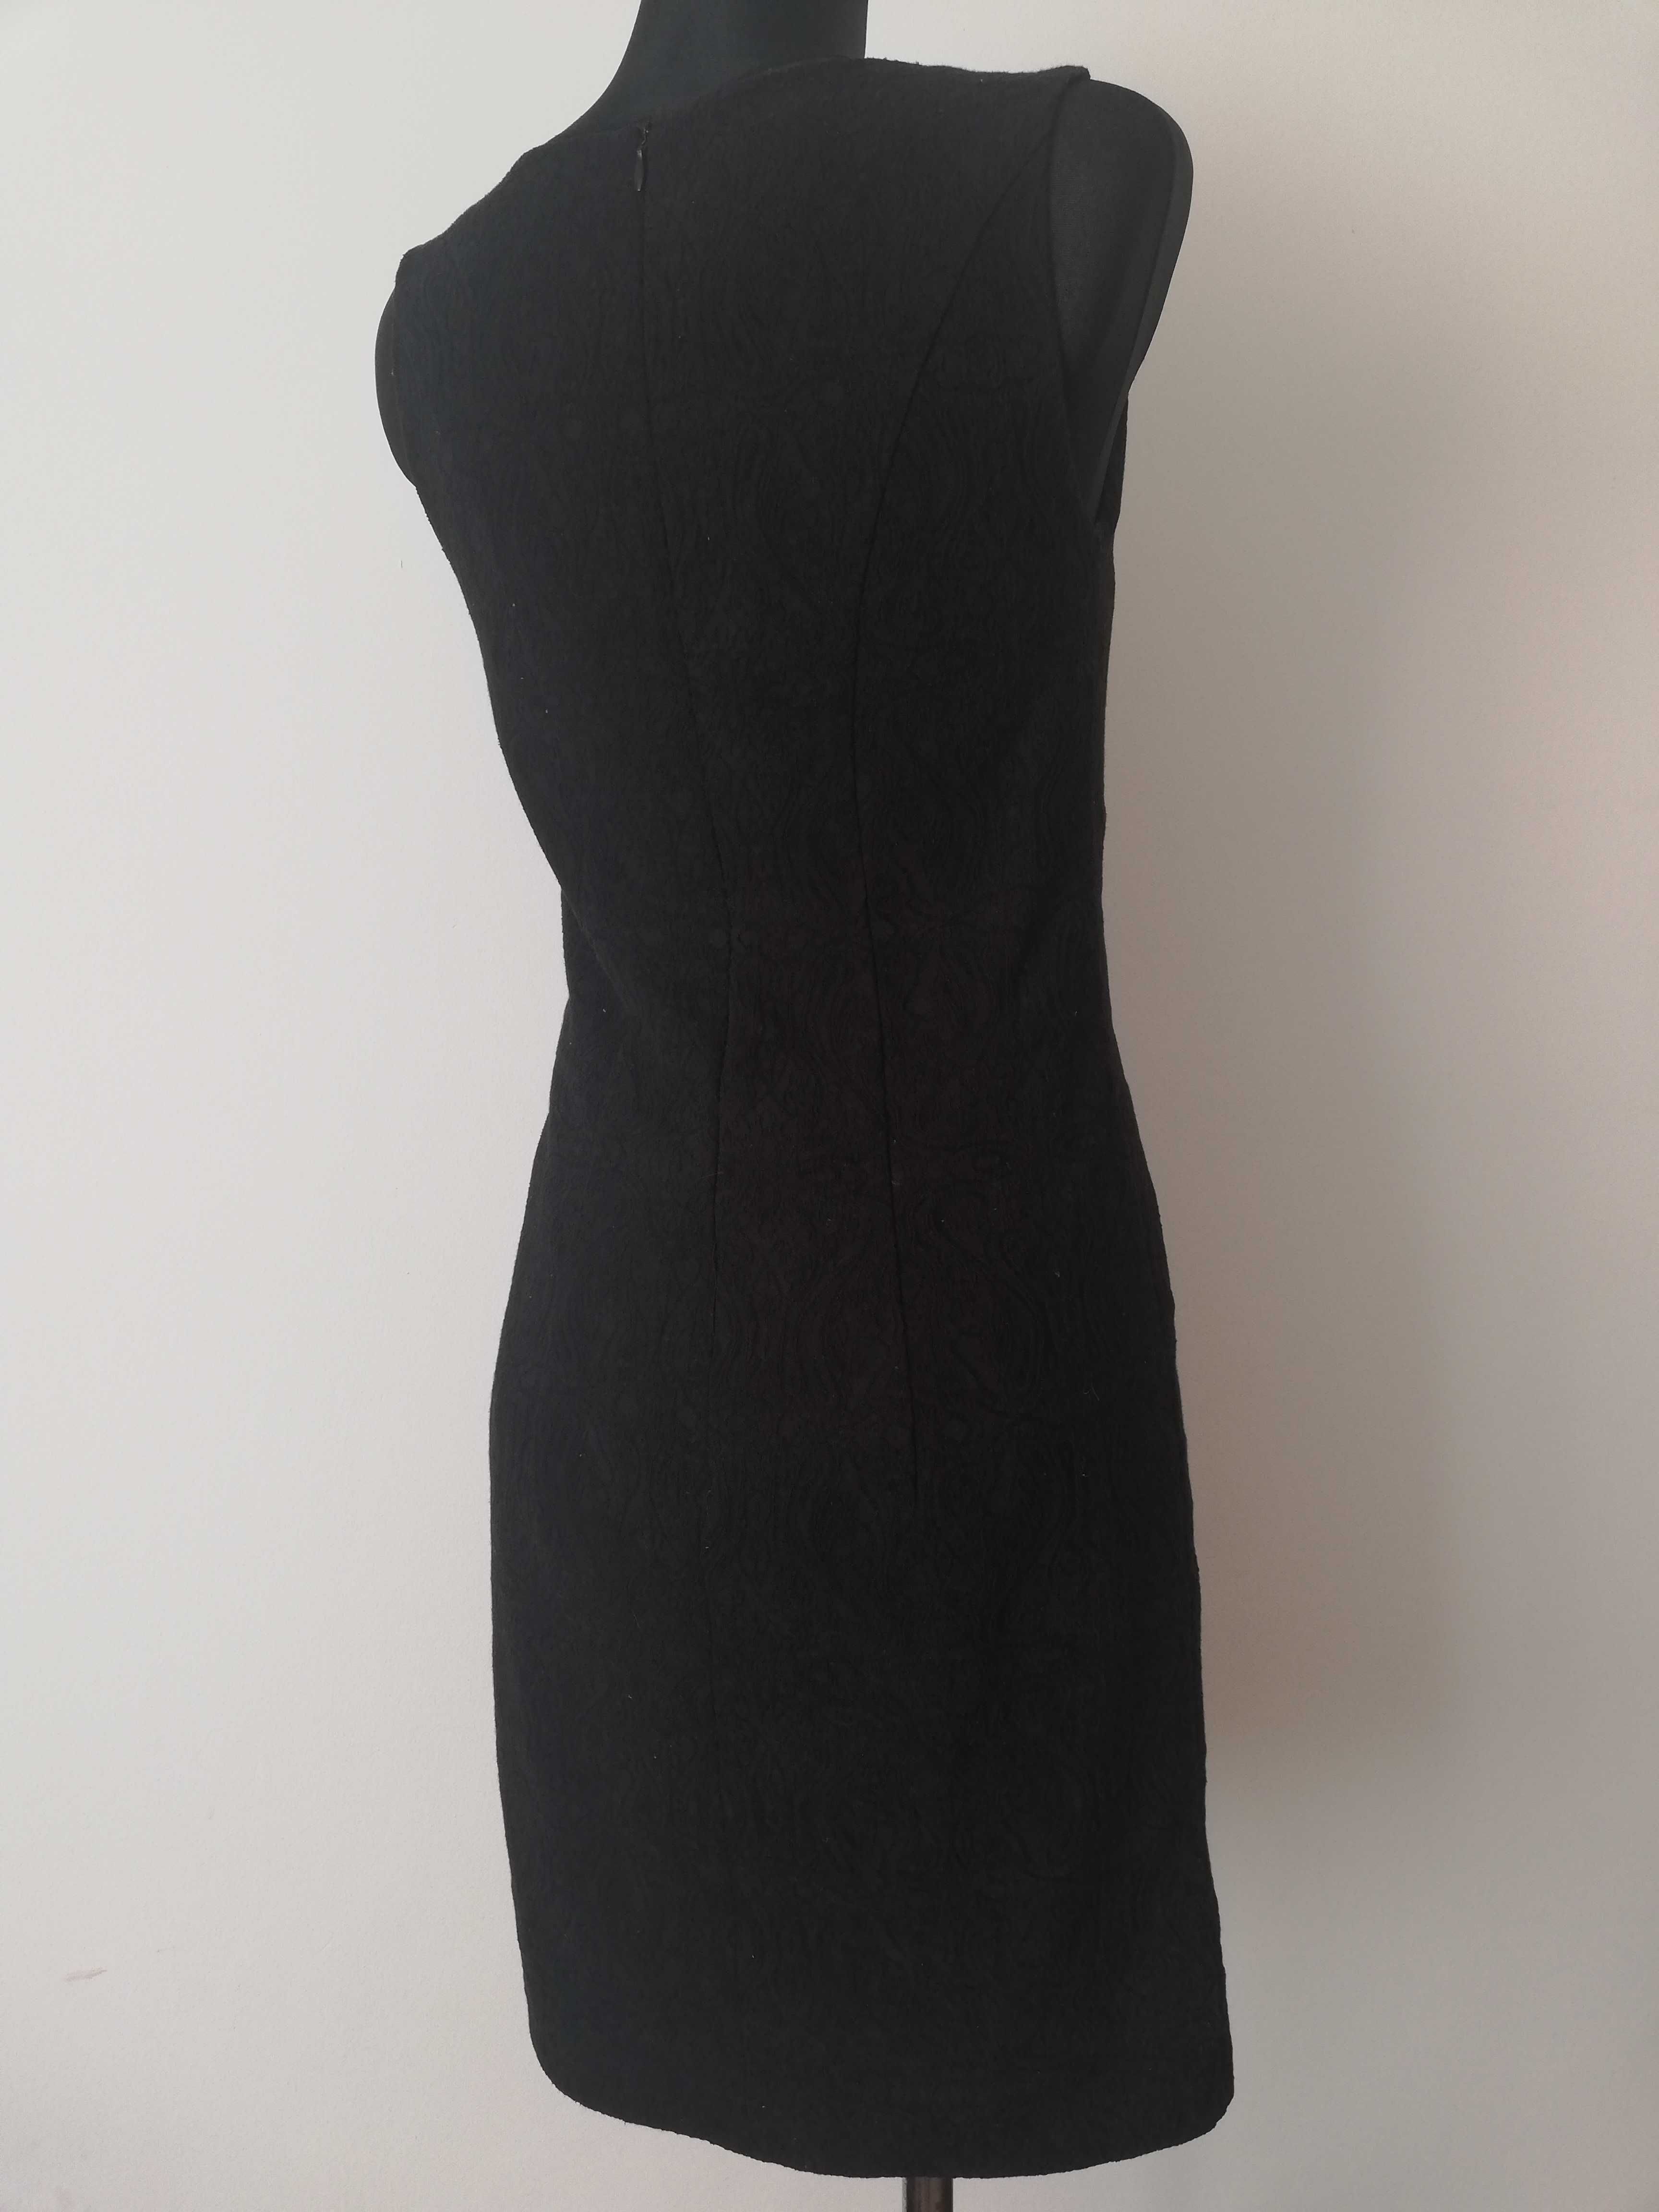 czarna sukienka mini 36 bez rękawów QUIOSQUE mała czarna